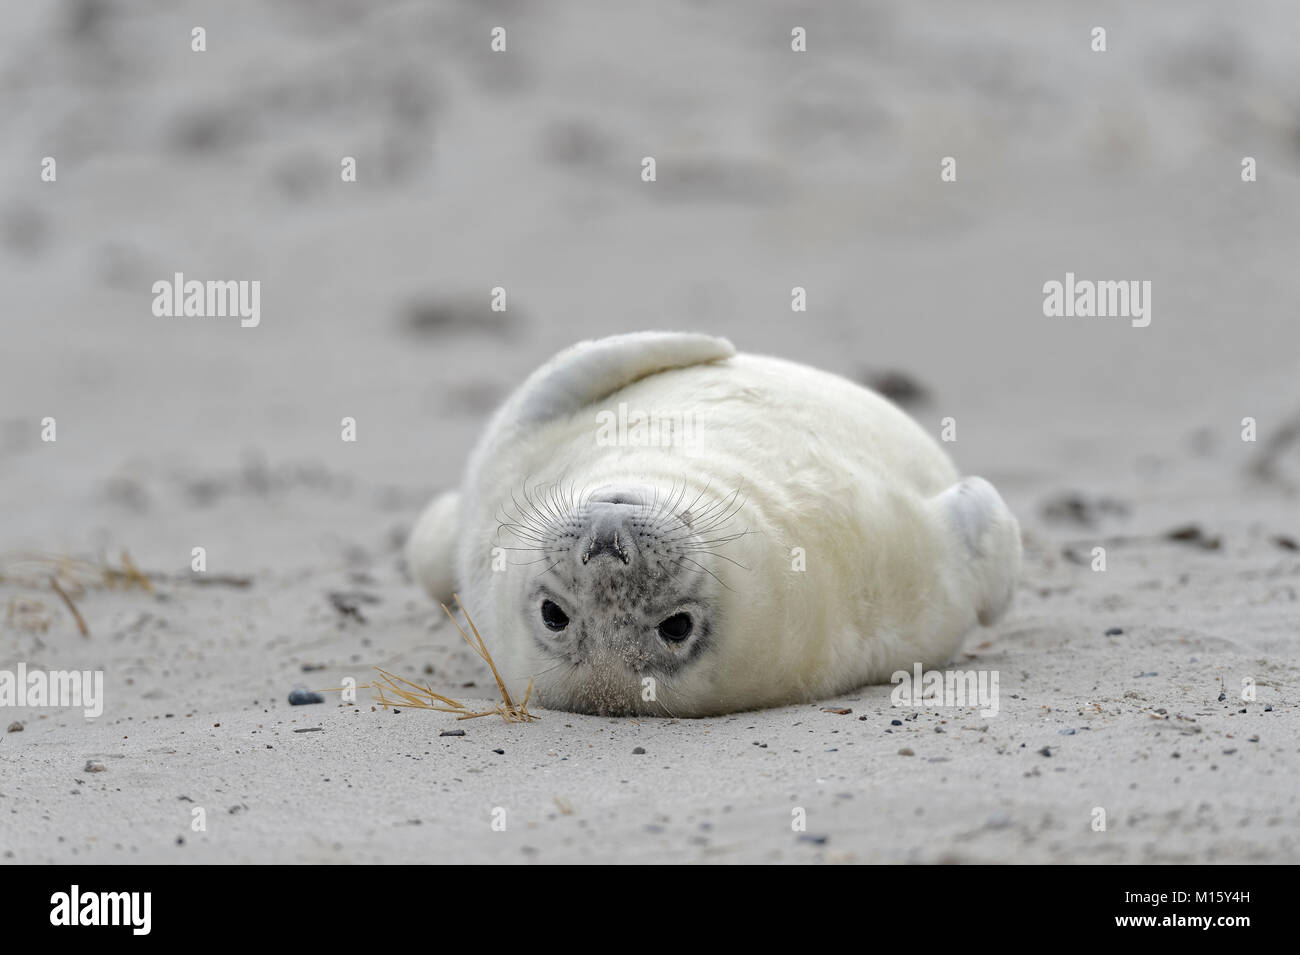 Guarnizione grigio (Halichoerus grypus),giovane animale in bianco capelli embrionale o Lanugo,si trova sul retro presso la spiaggia di sabbia Foto Stock